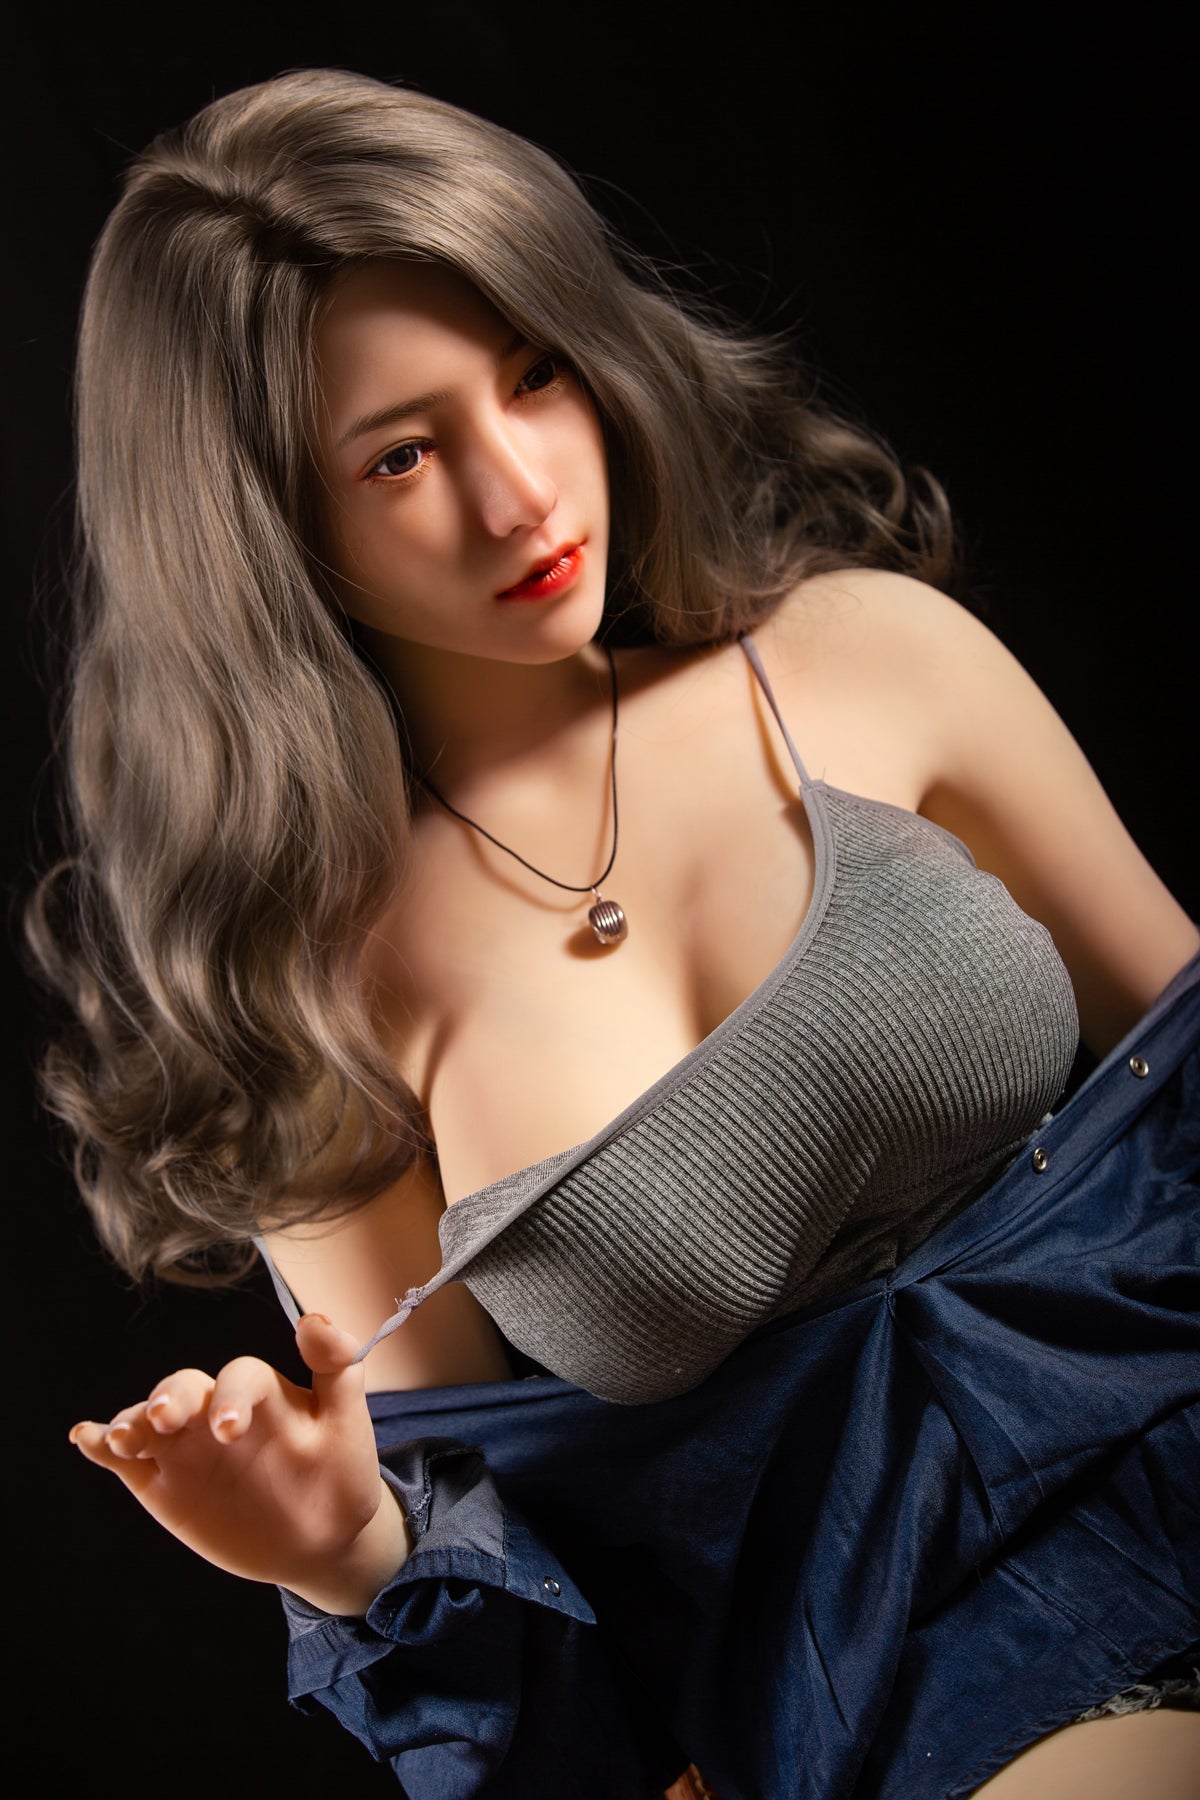 Xiao Qiang